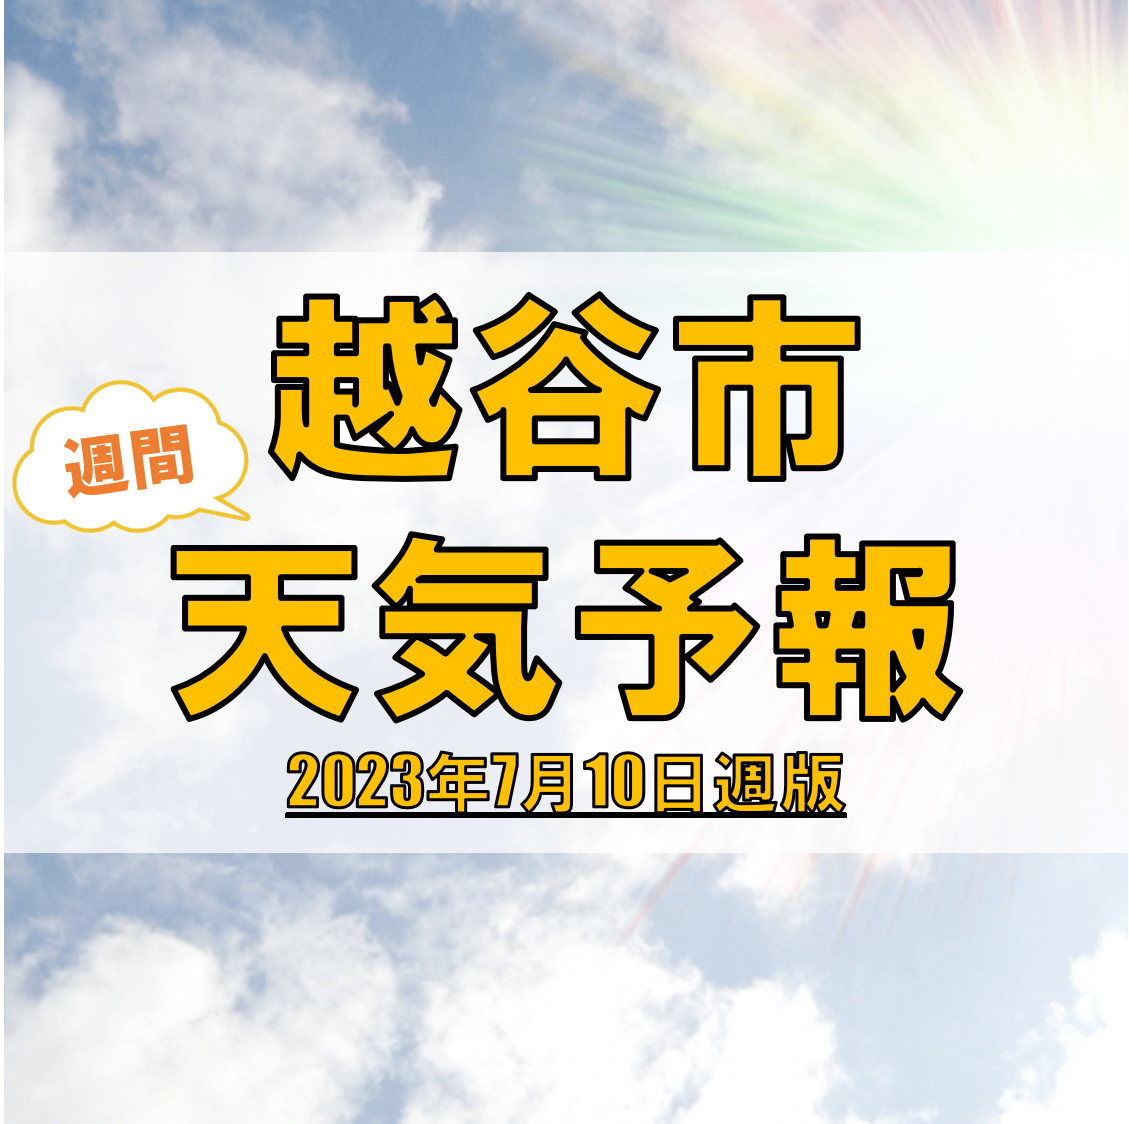 越谷市の天気 週間予報【2023年7月10日週】